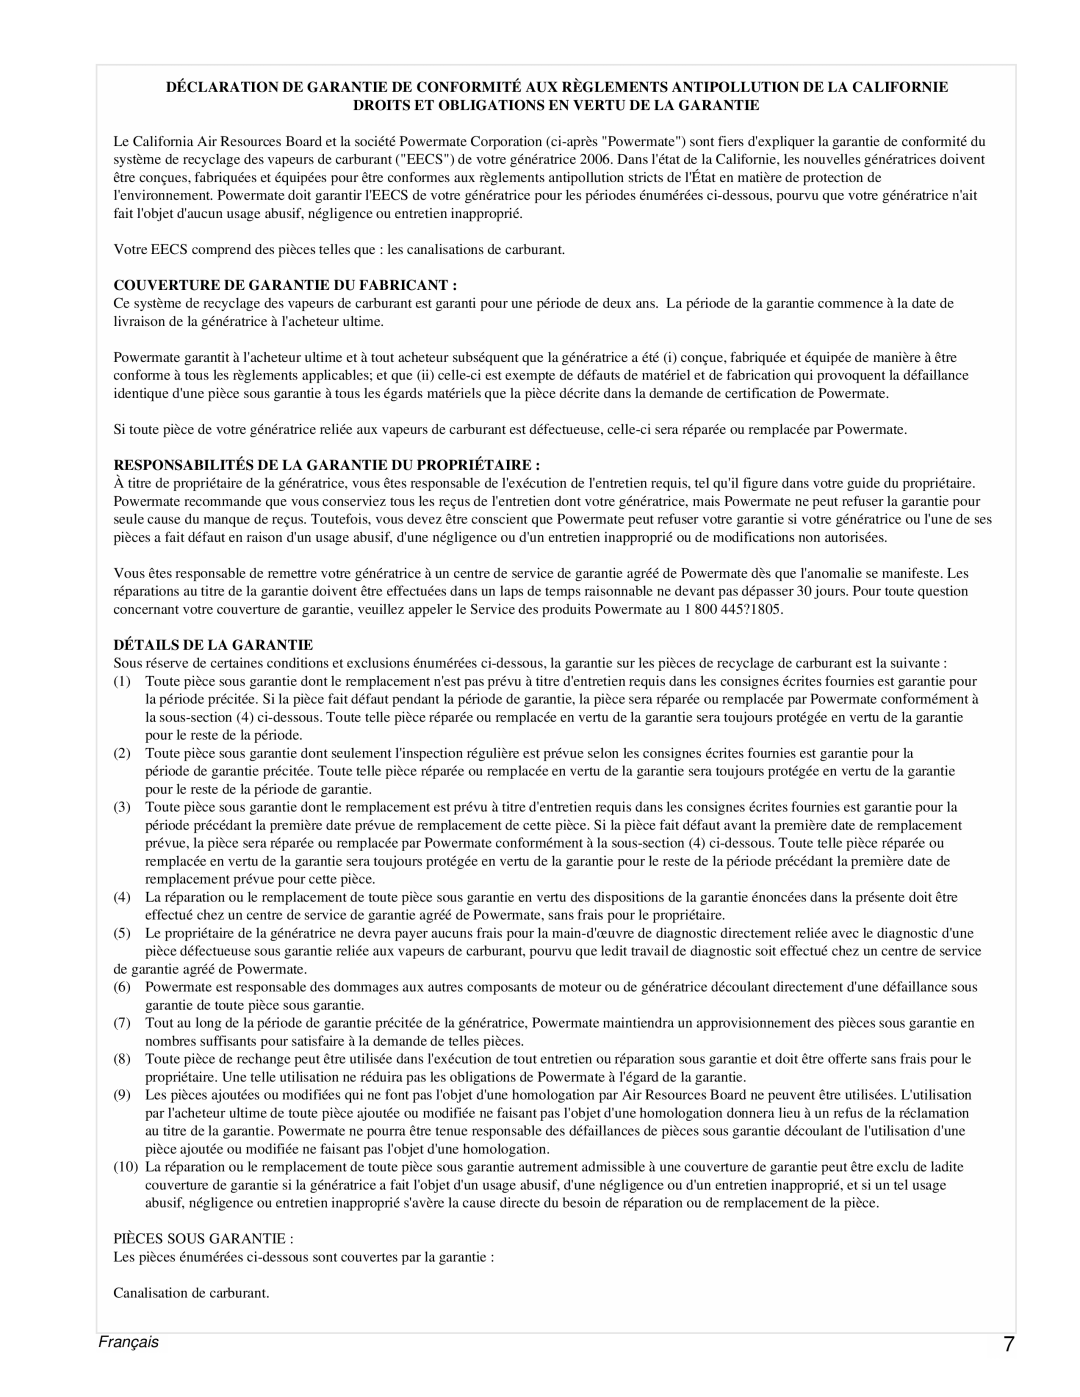 Powermate PMC431800.01 manual Français, Droits Et Obligations En Vertu De La Garantie, Couverture De Garantie Du Fabricant 